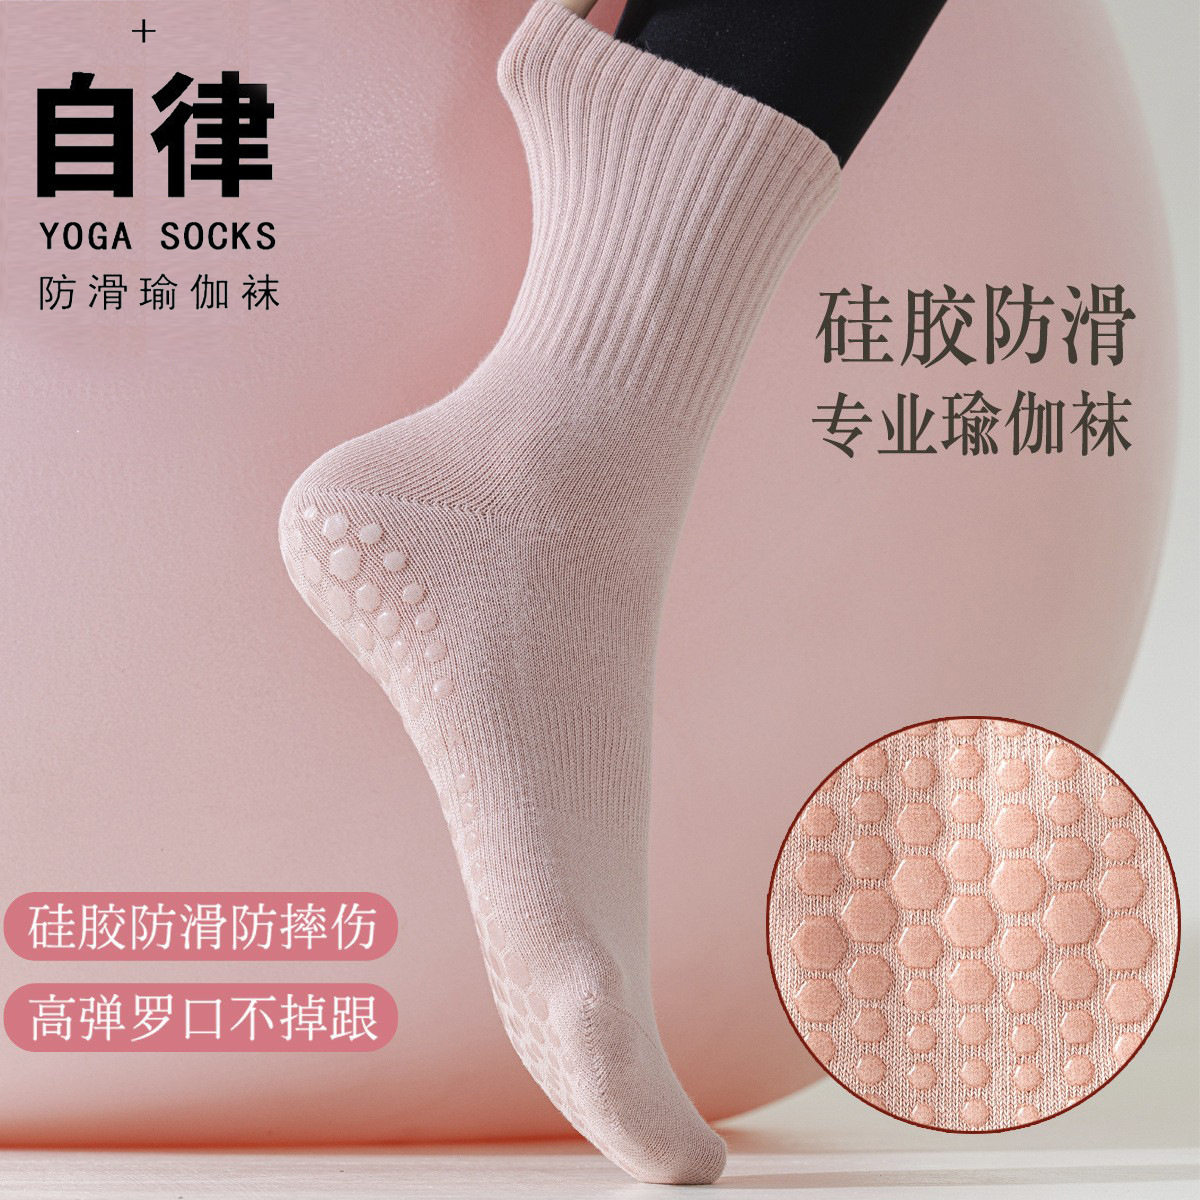 Fitness Sports Socks Yoga Socks Tube Socks Workout Silicone Non-Slip Indoor Fitness Pilates Women's Socks